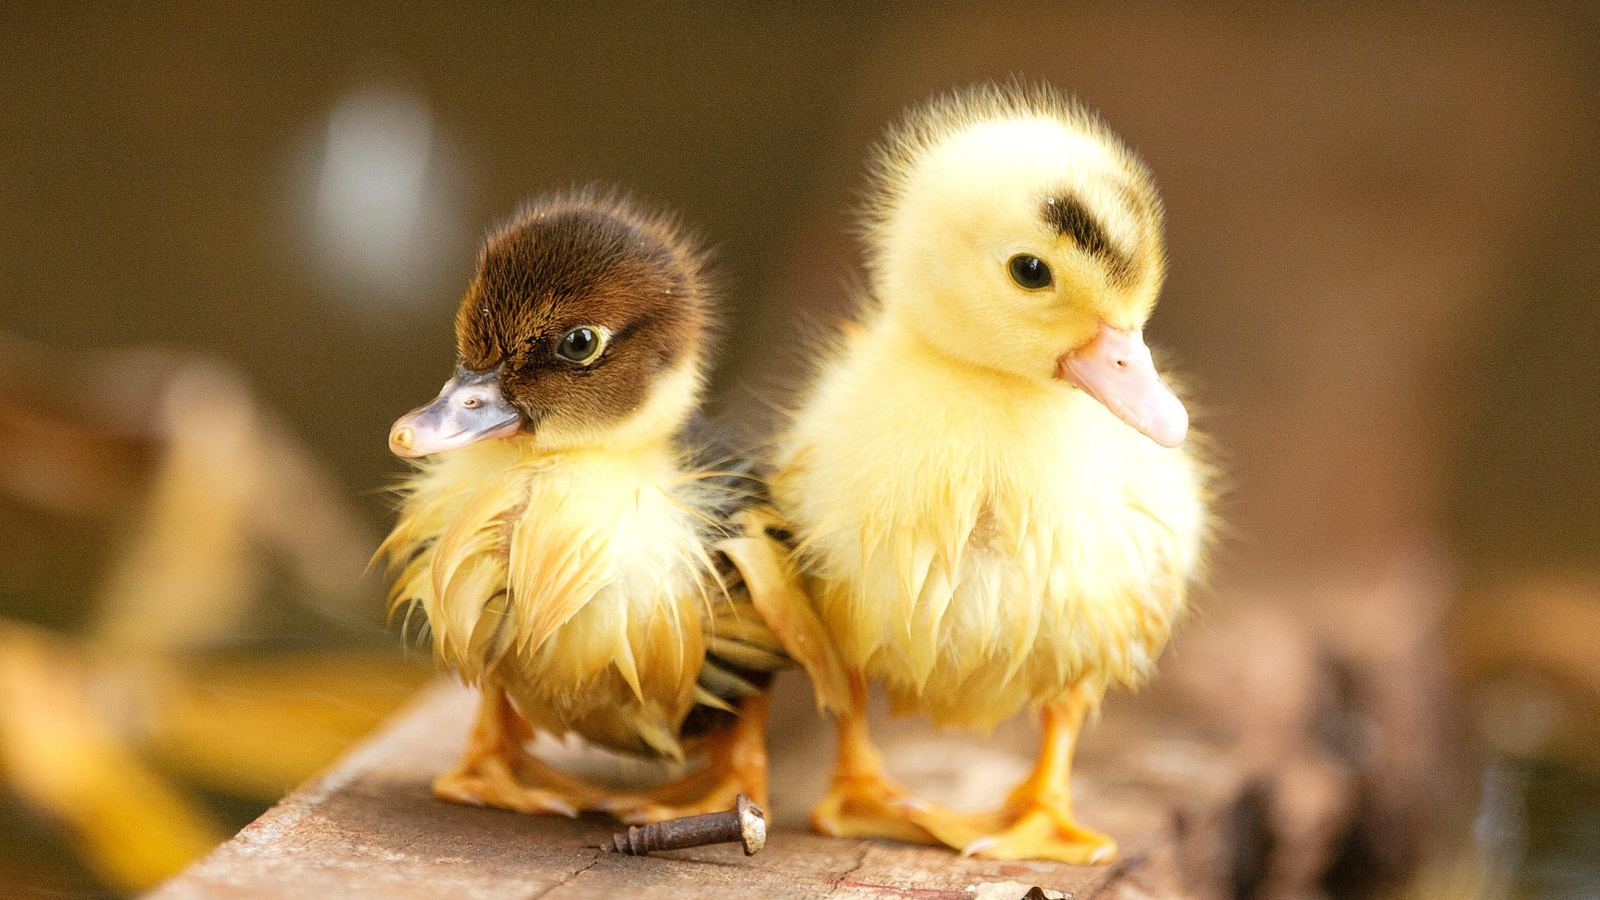 Обои Ducklings 1600x900